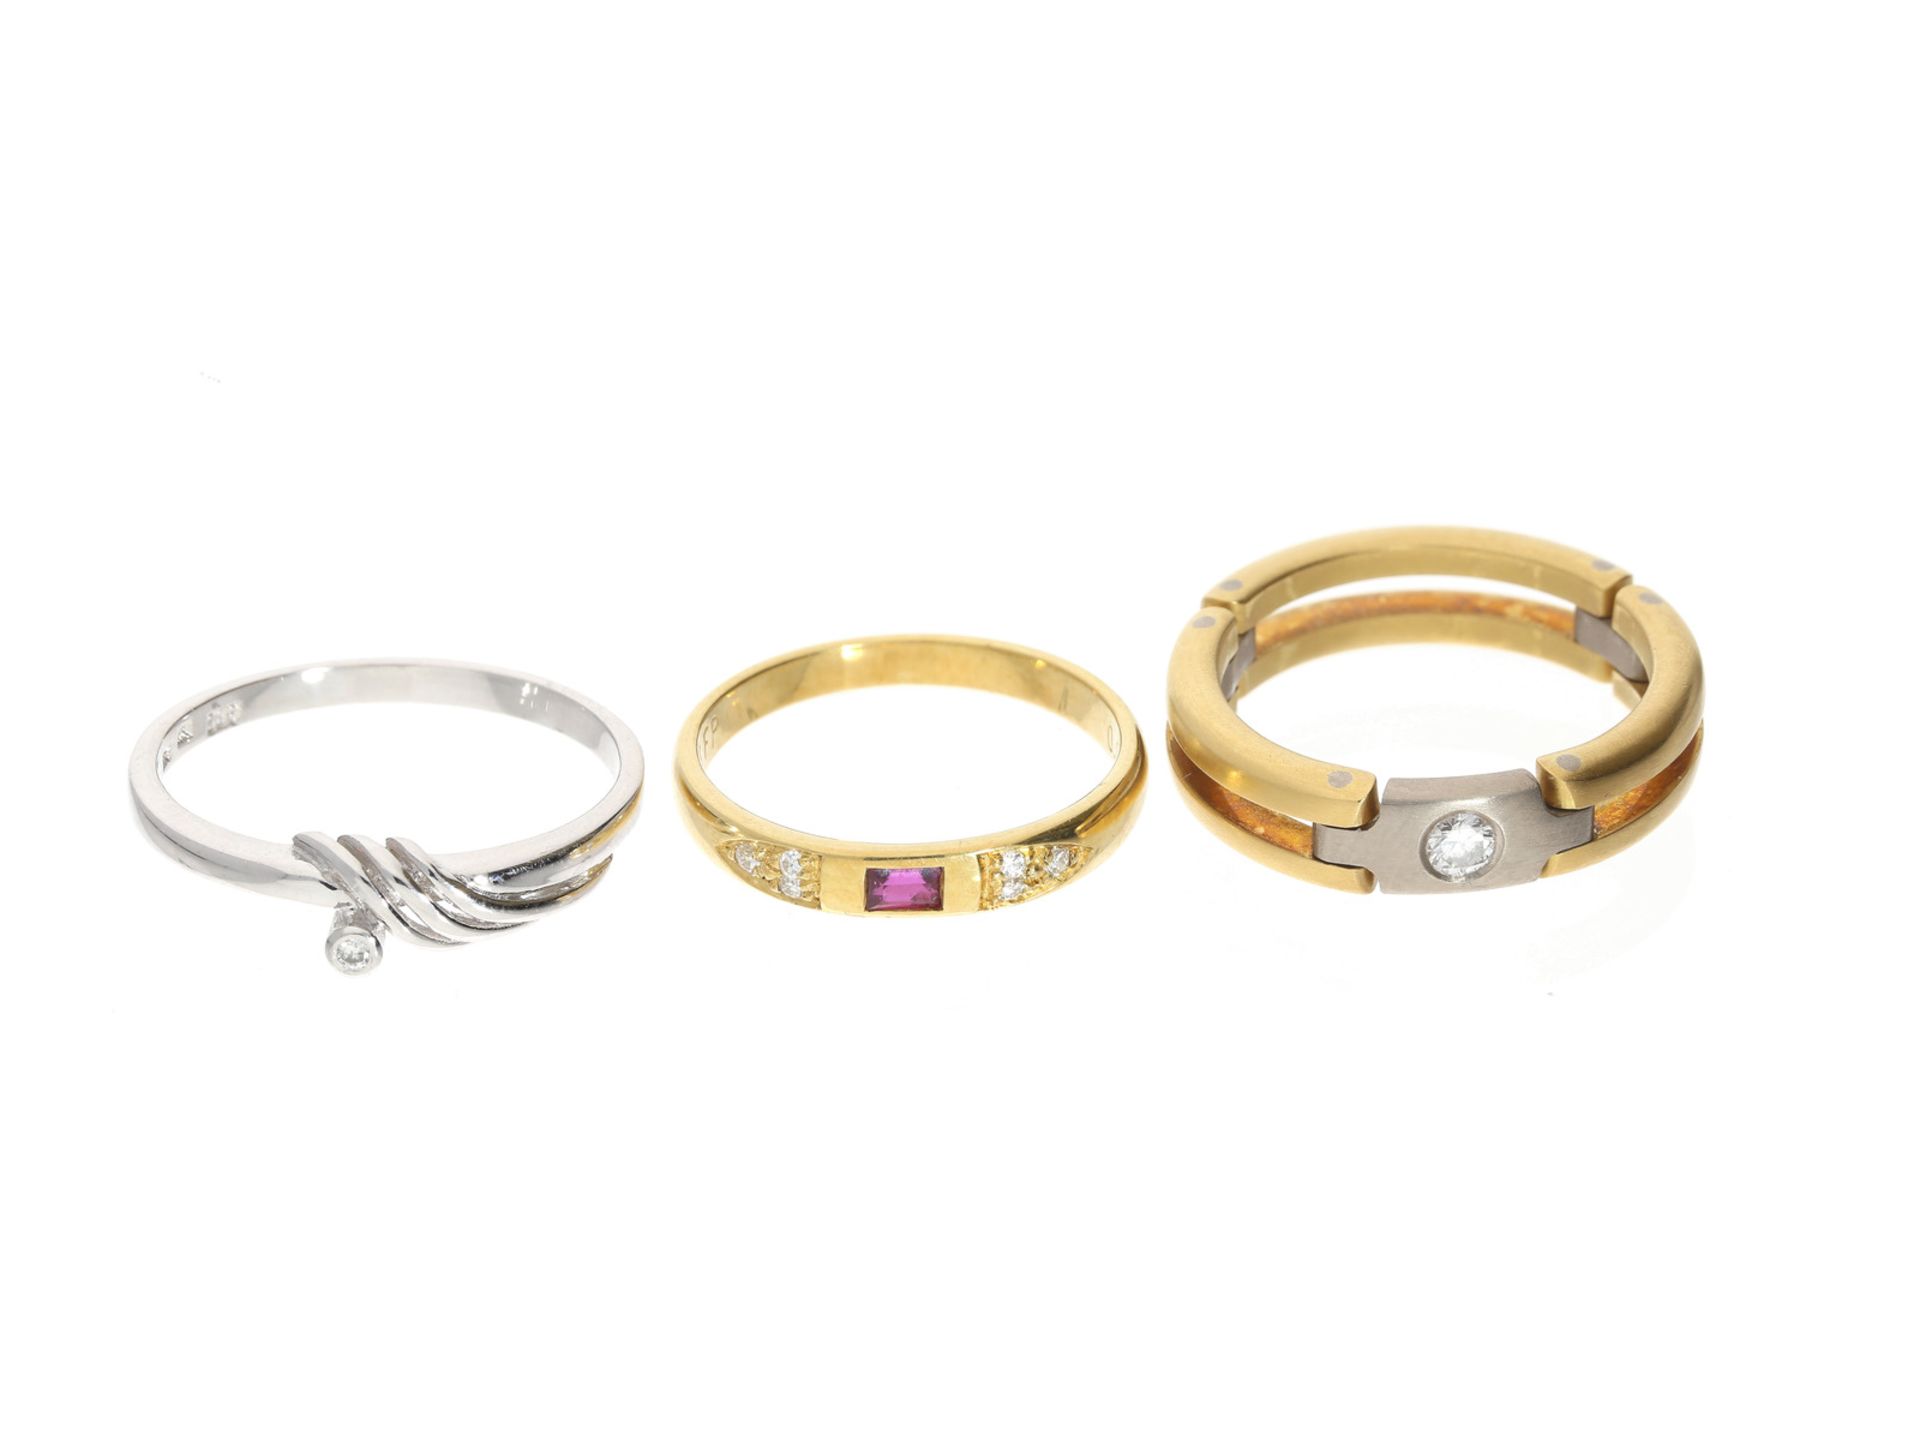 Ring: Konvolut moderne/vintage GoldschmiederingeKonvolut bestehend aus 3 Goldschmiederingen, RG52-